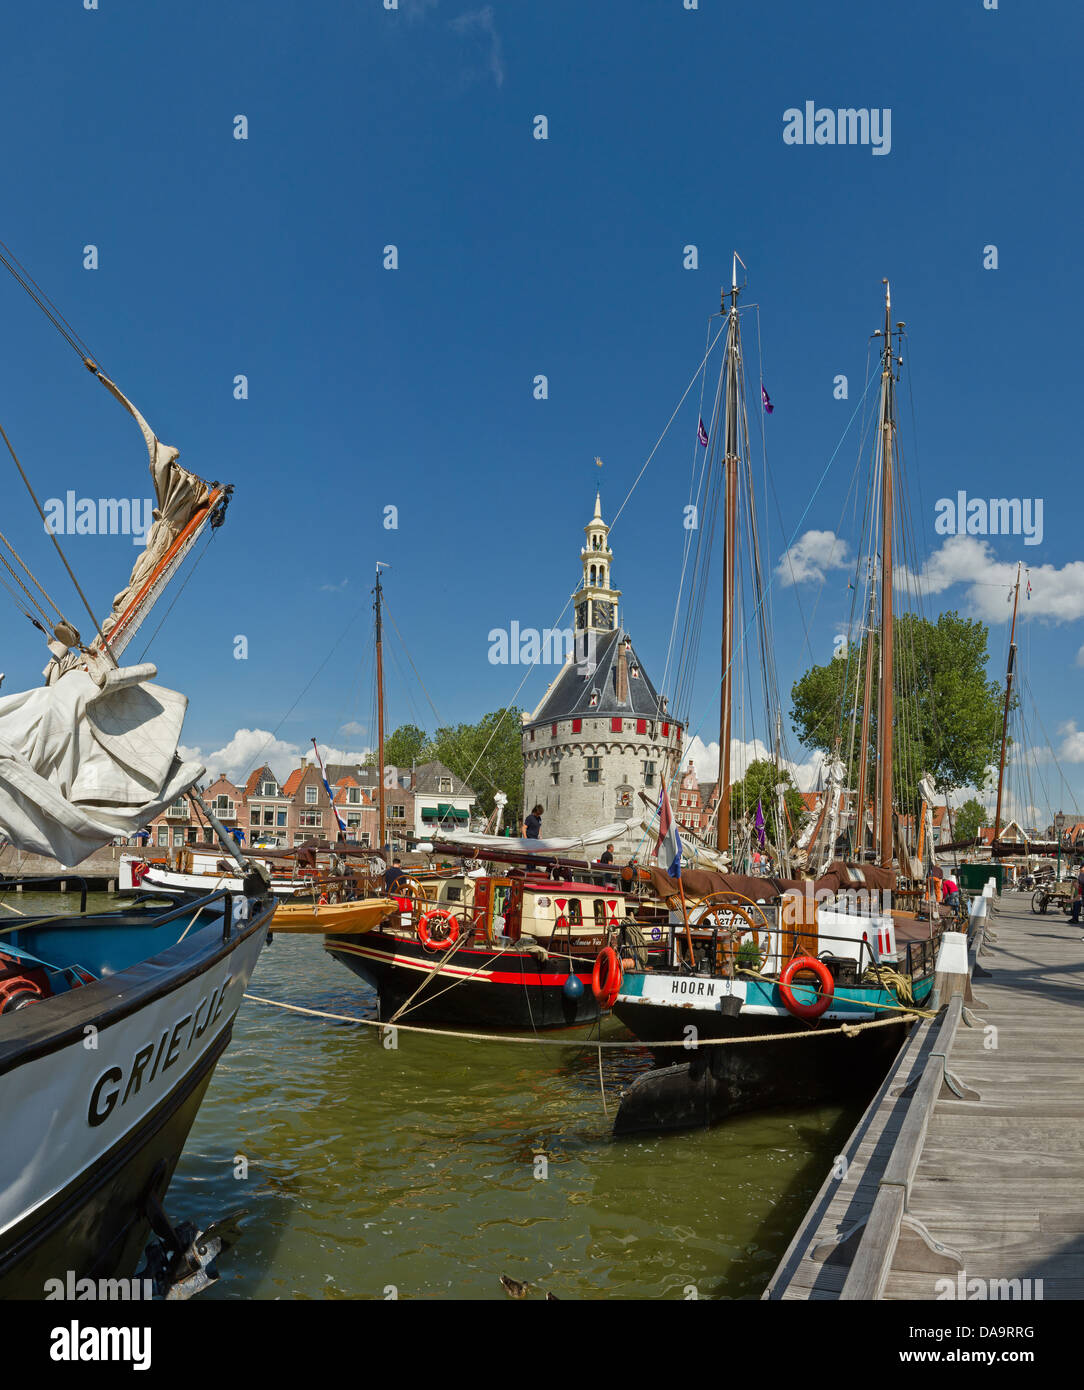 Paesi Bassi, Olanda, Europa, Hoorn, vela, navi, nave, la torre principale, la torre, città, villaggio, acqua, estate, navi, barca, Foto Stock